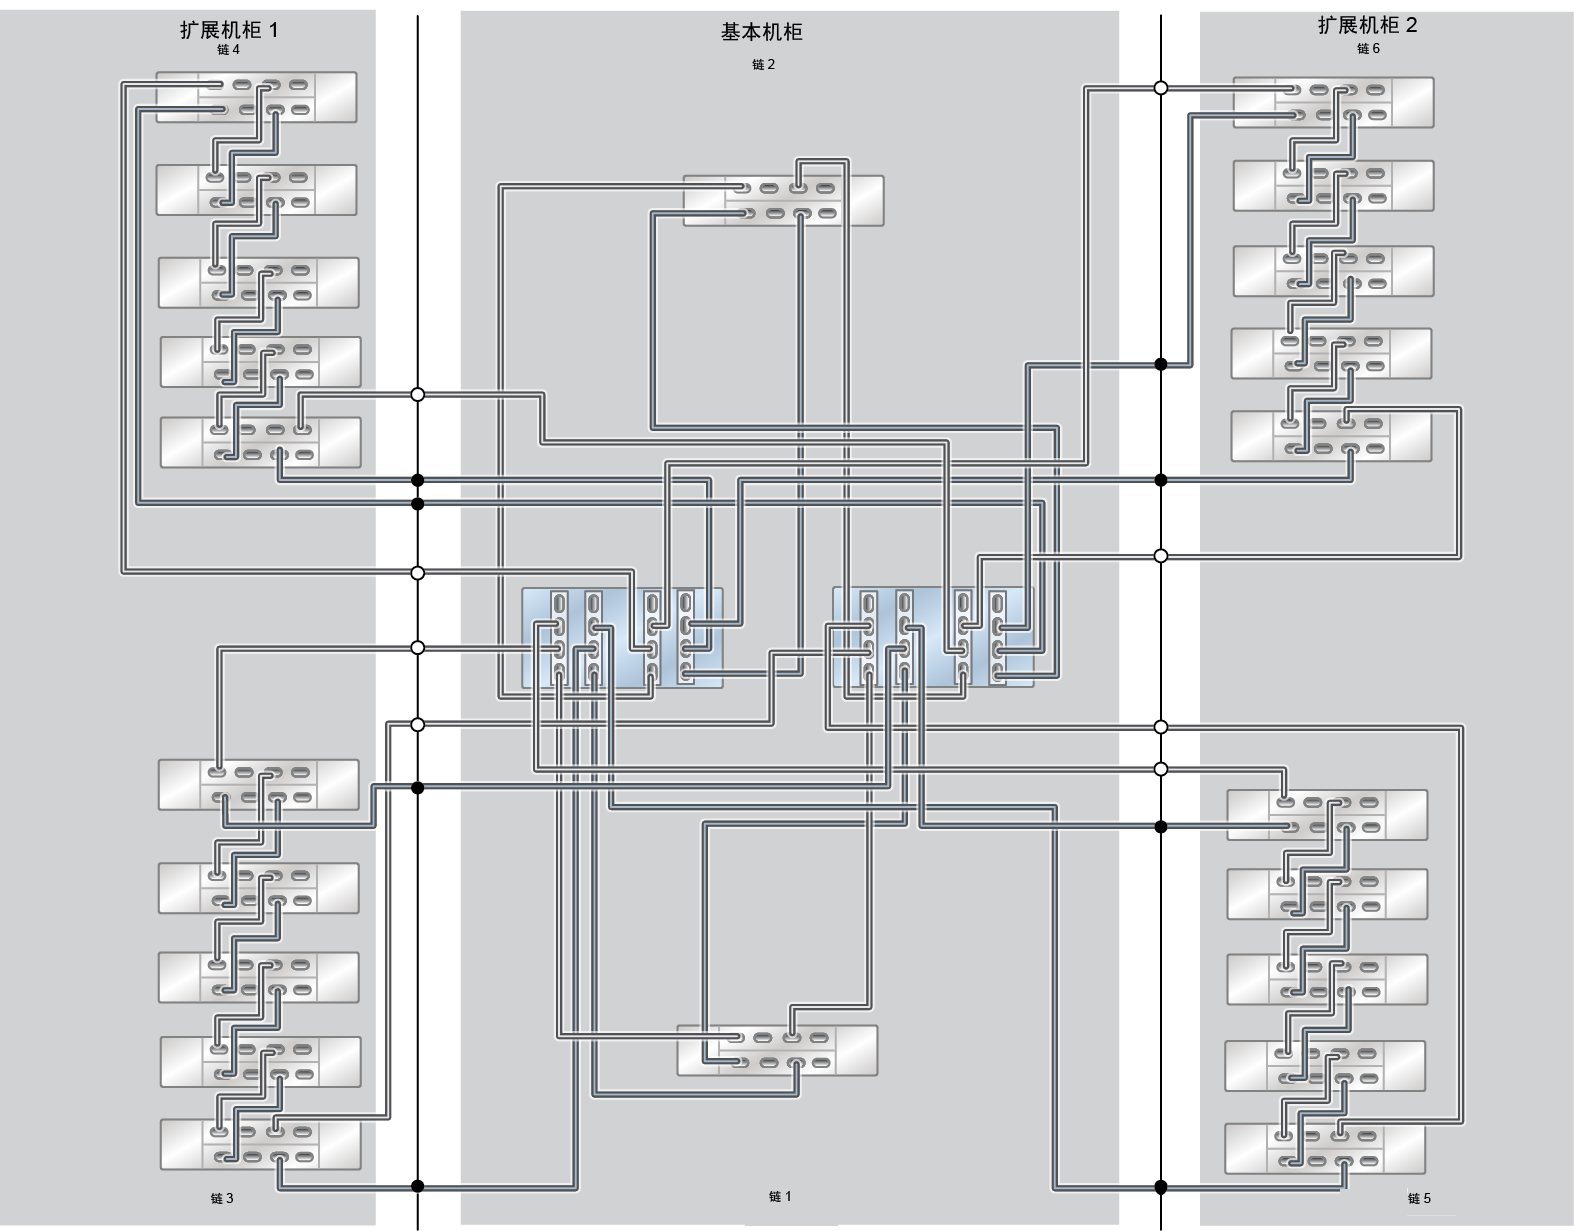 image:此图显示了具有两个扩展机柜（20 个 DE3-24C 磁盘机框）的 ZS5-4 Racked System 全闪存。